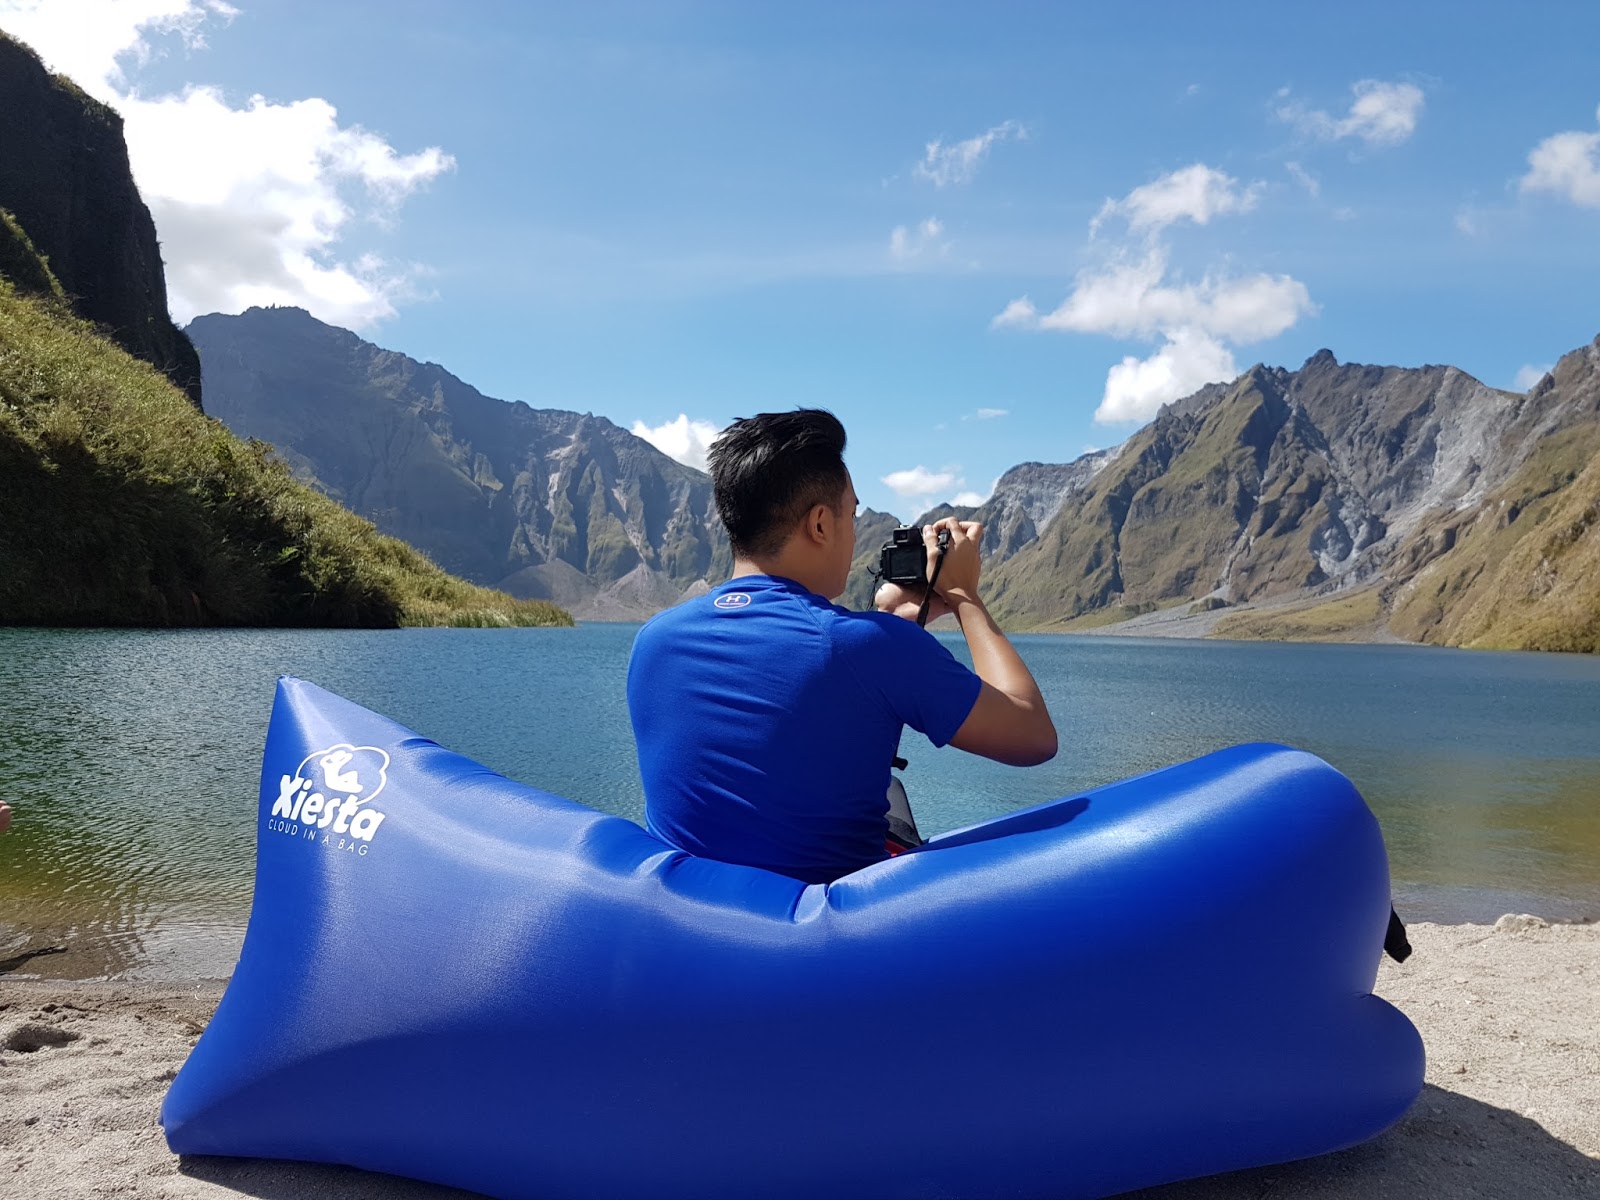 Mt. Pinatubo Crater Lake Tripoint Area of Pampanga, Tarlac and Zambales